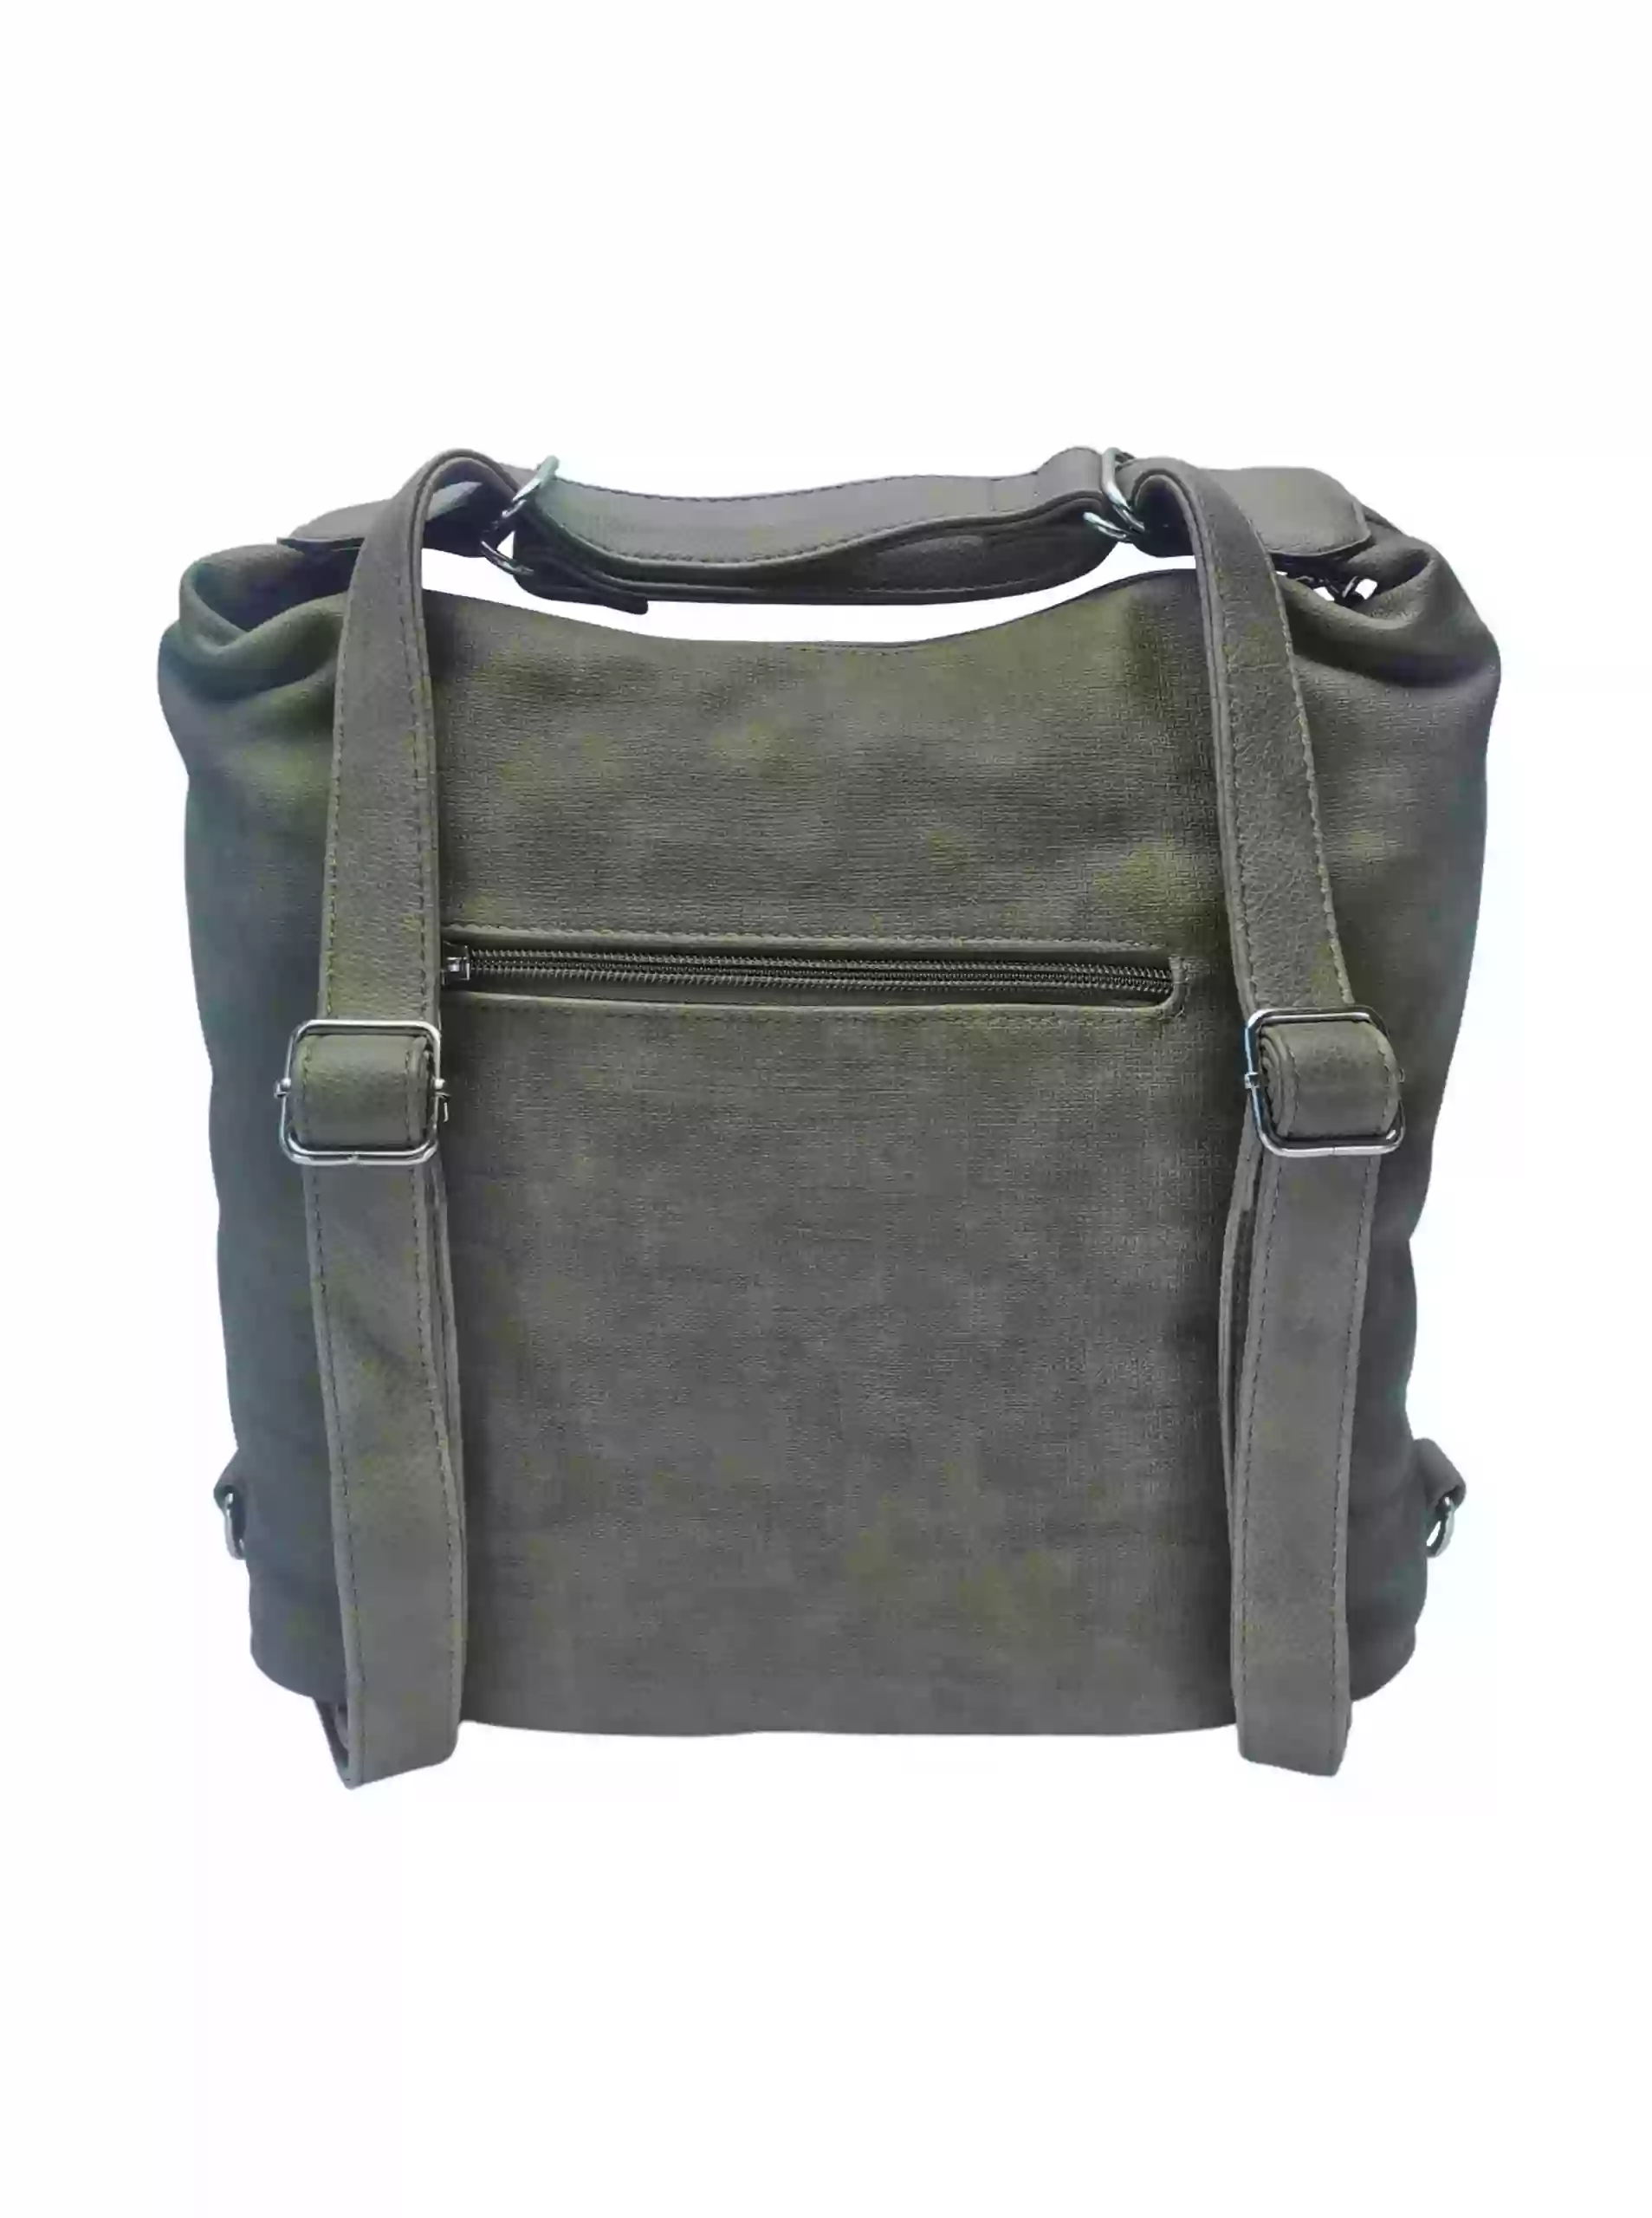 Moderní khaki kabelko-batoh z eko kůže, Tapple, H190010, zadní strana kabelko-batohu s popruhy